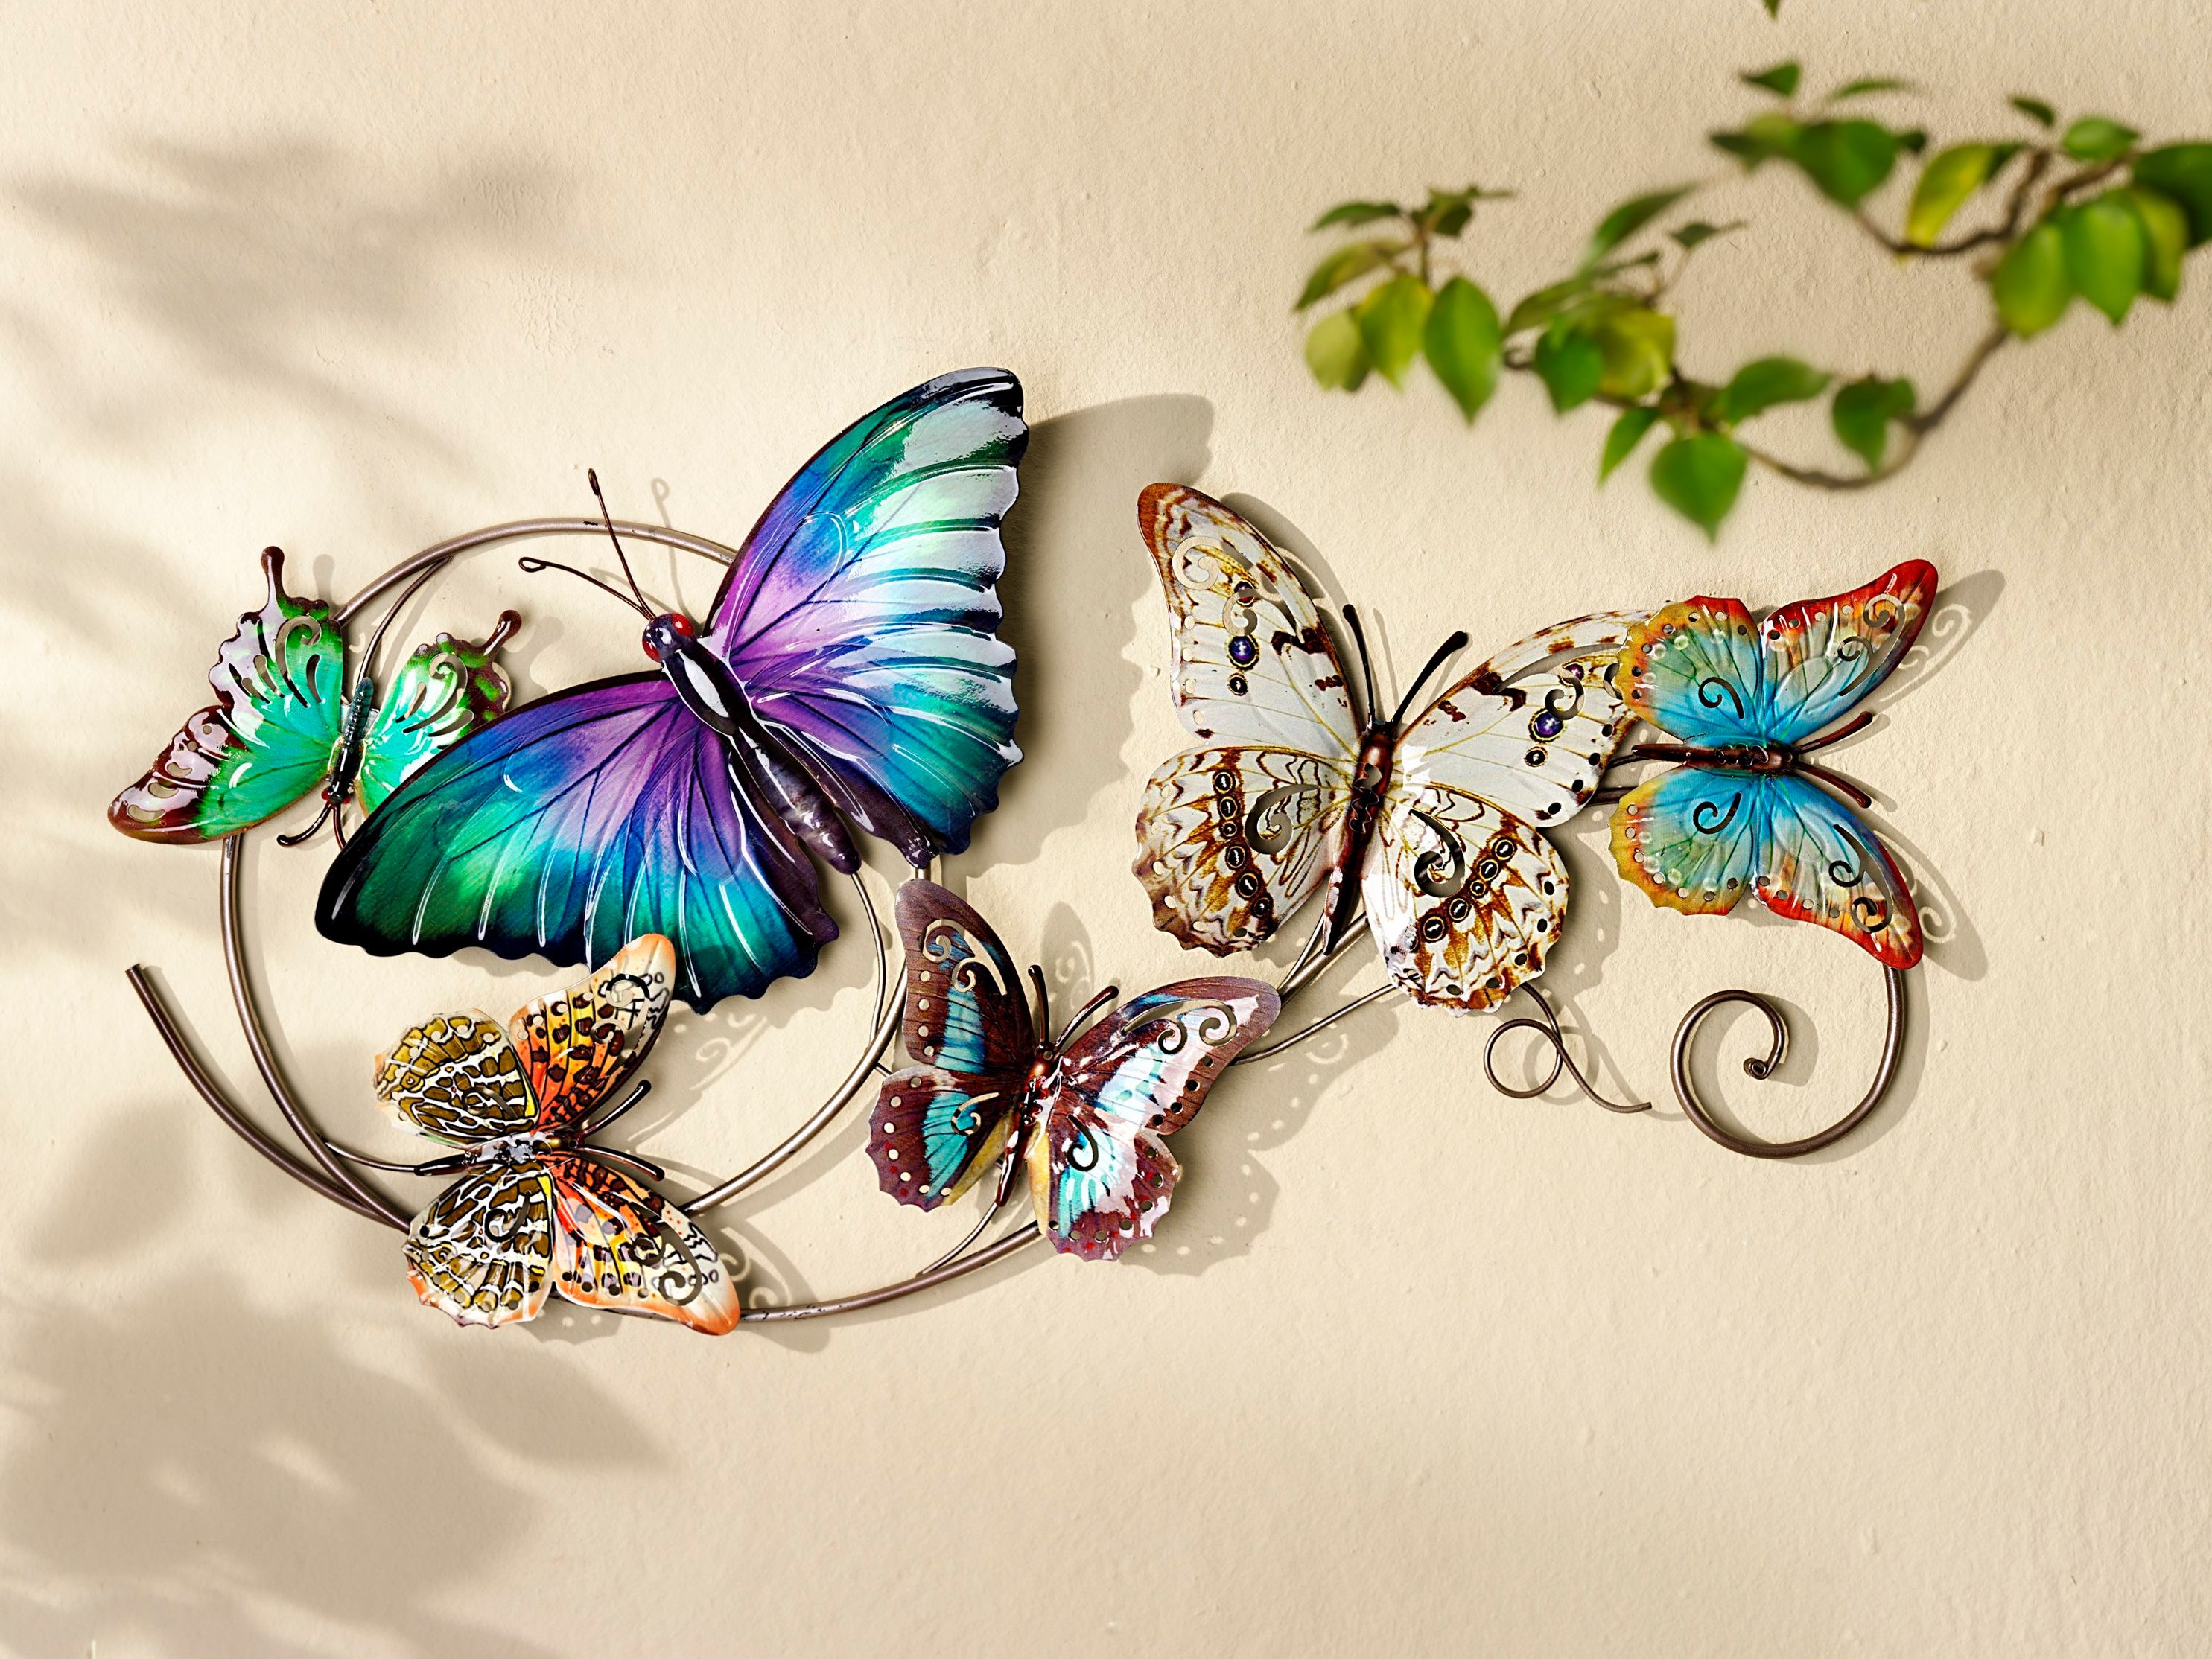 Wanddeko Schmetterlinge jetzt bei Weltbild.at bestellen